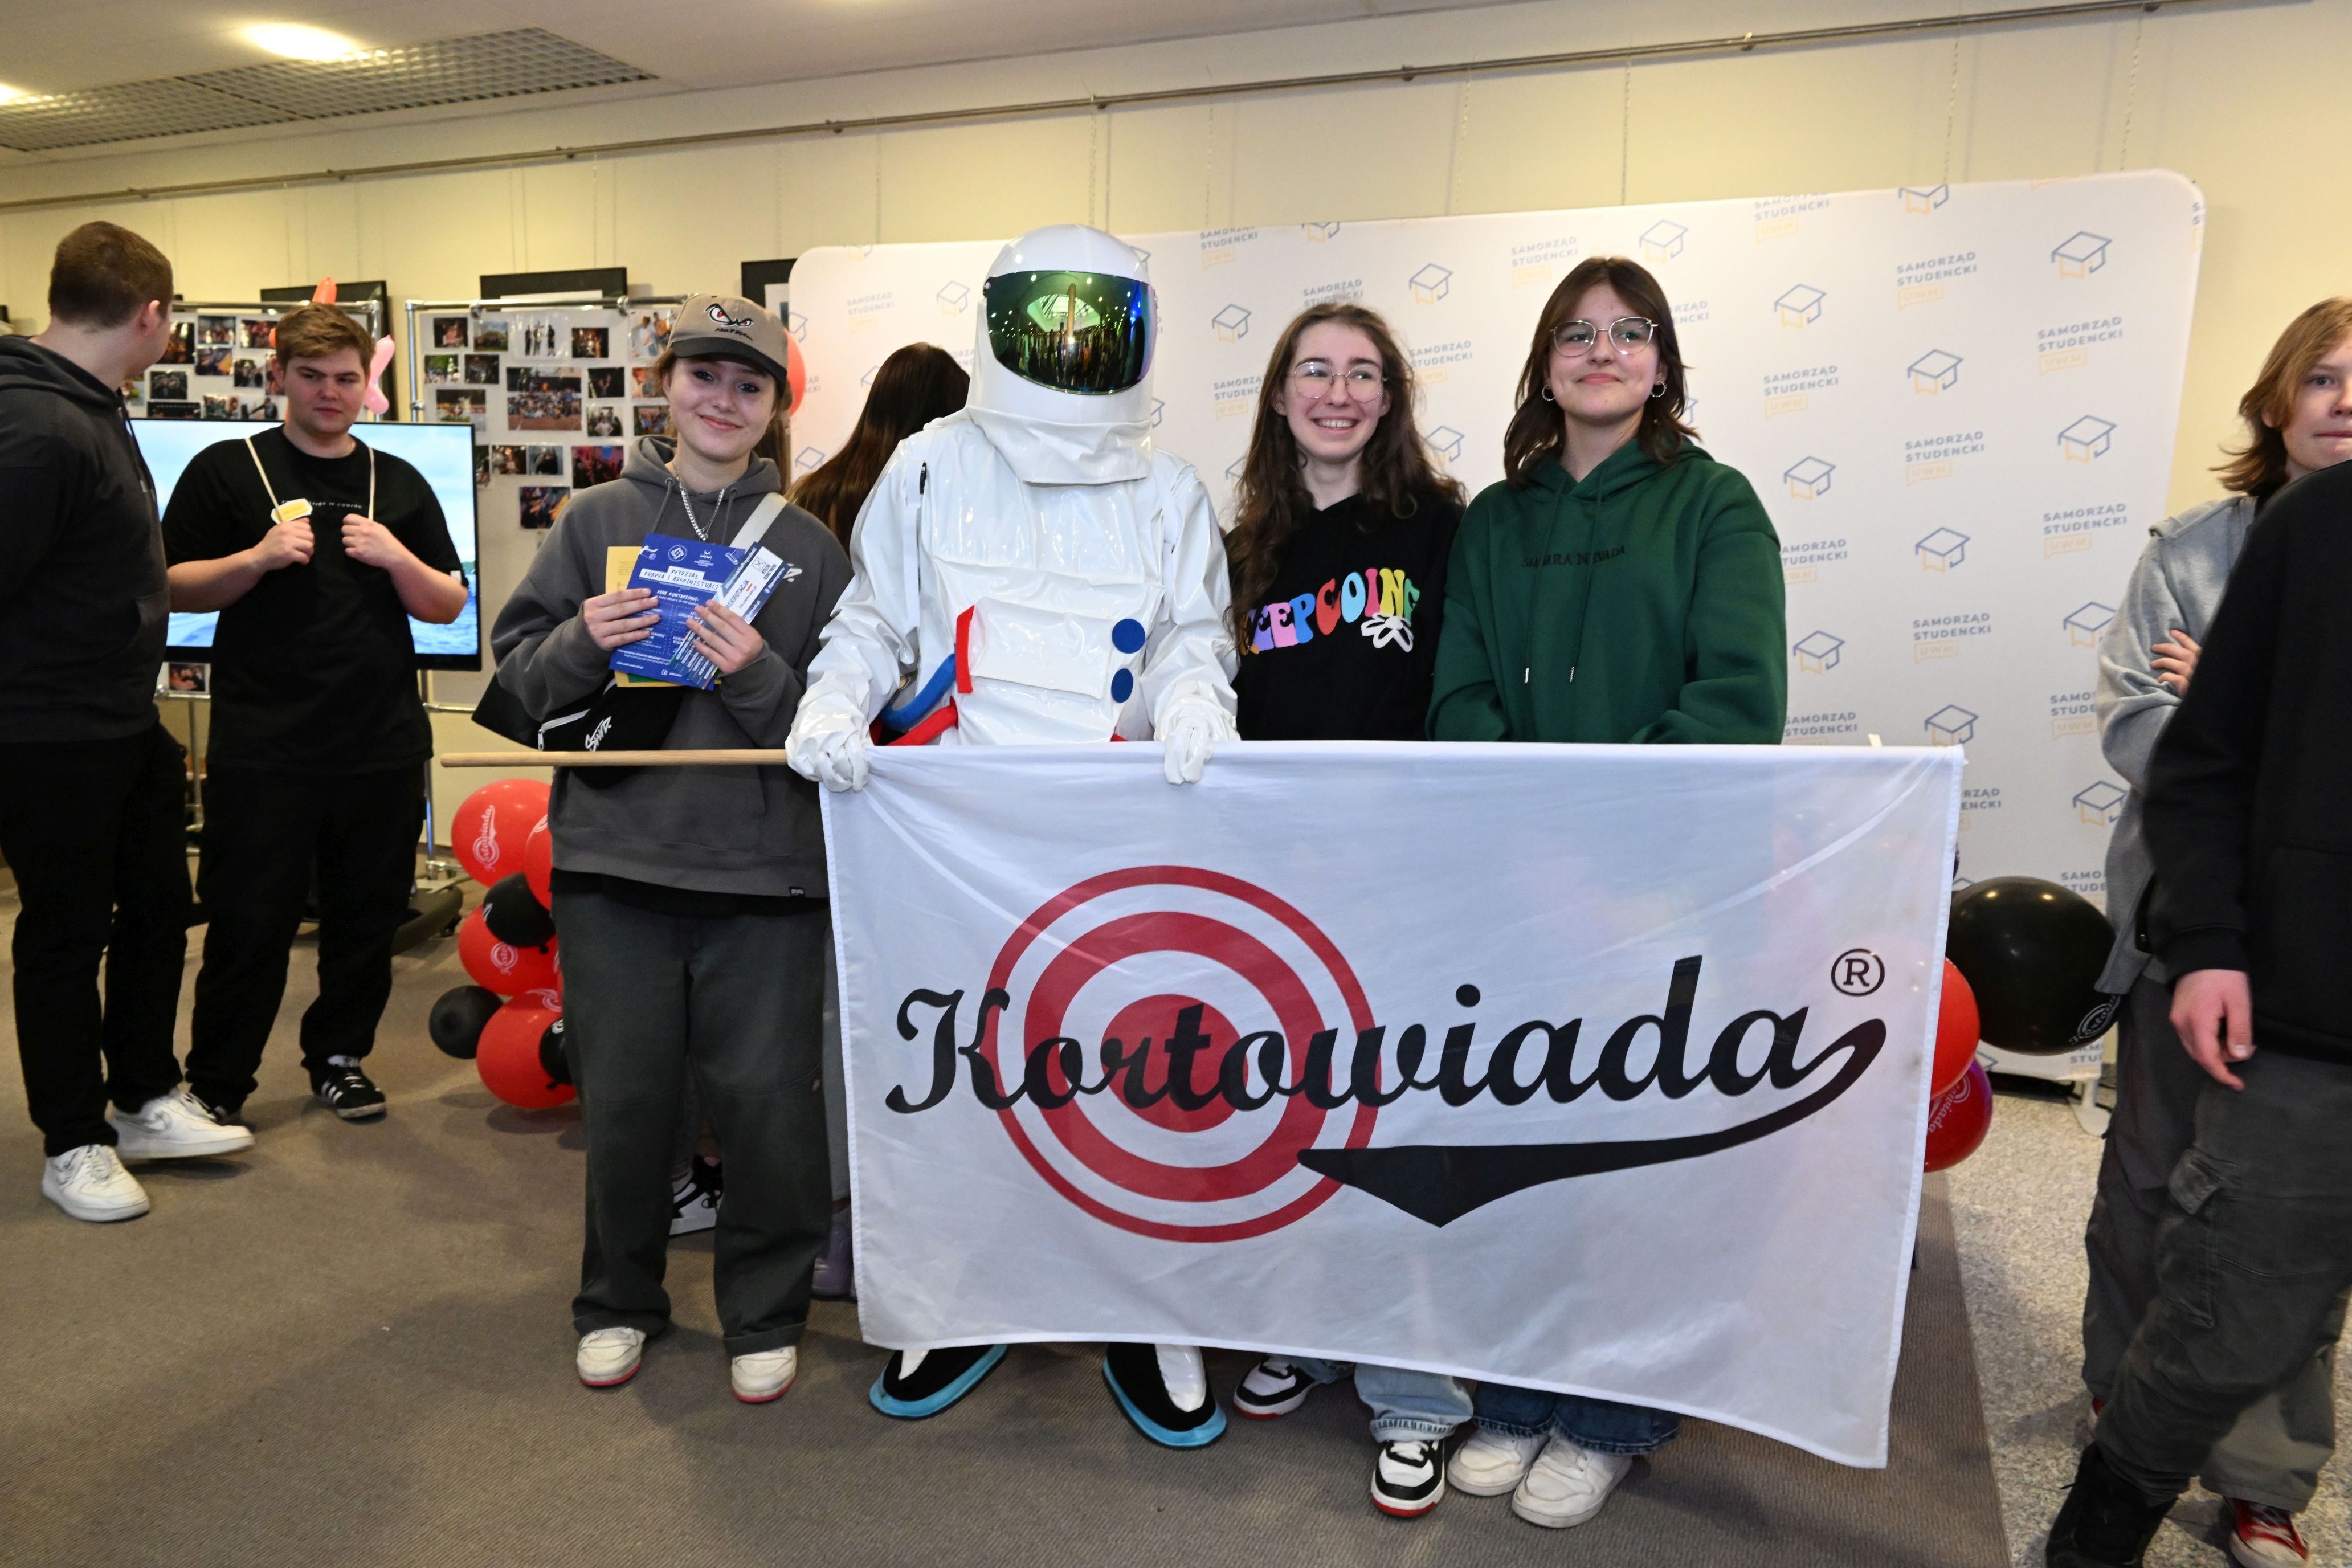 Dzień Otwarty UWM 2023 - Astronauta pozuje do zdjęcia z flagą Kortowiady